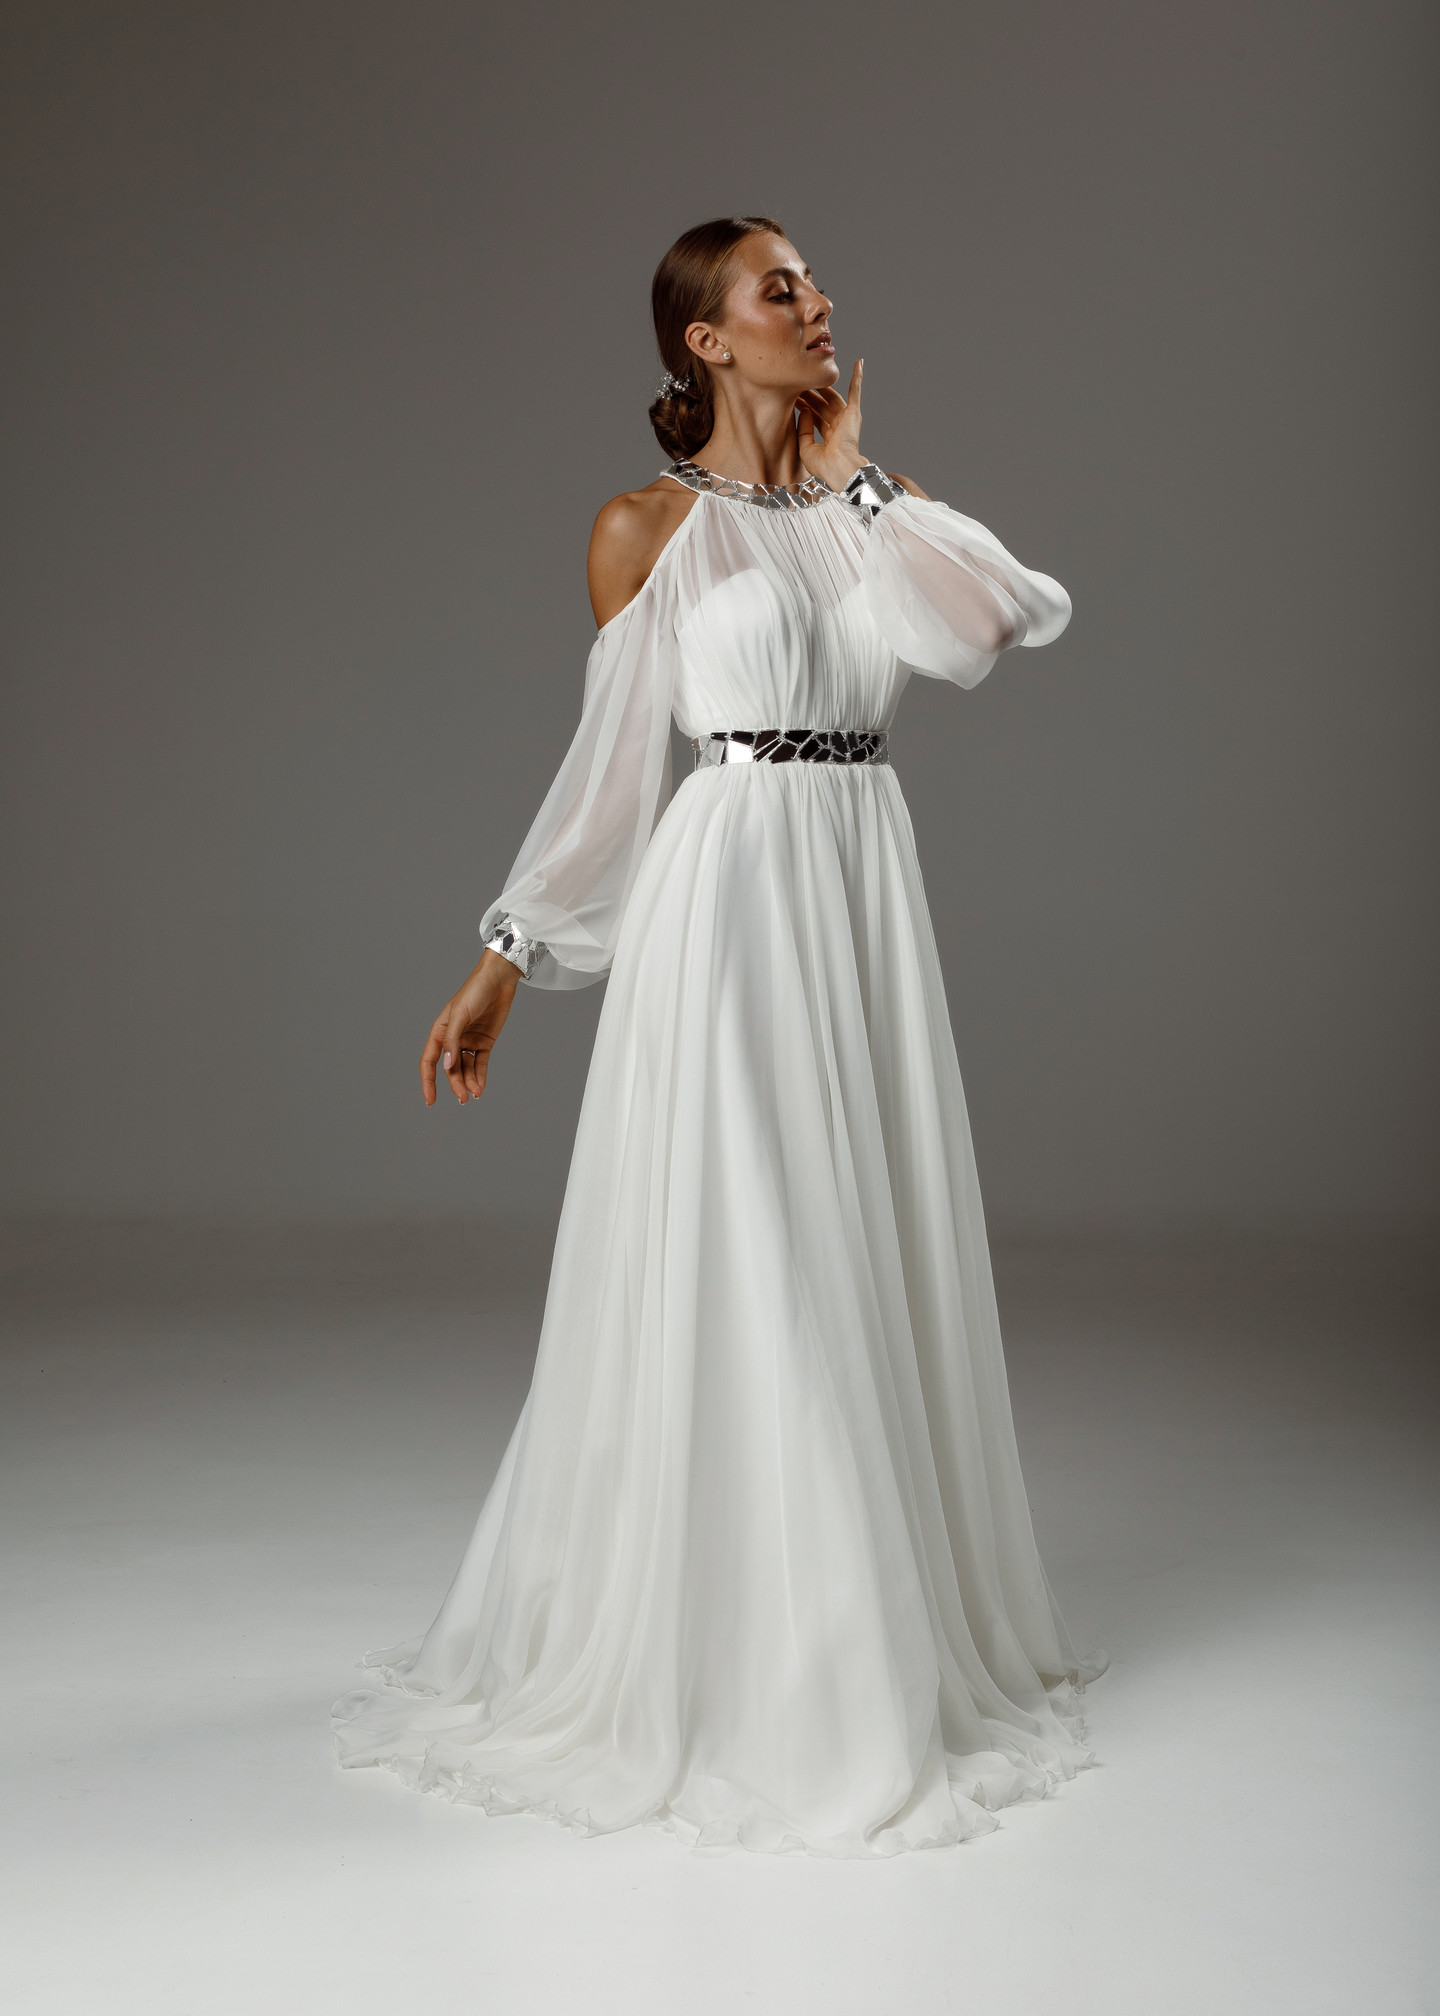 Платье Ариана, 2020, одежда, платье, свадебное, молочно-белый, шифон, вышивка, А-силуэт, рукава